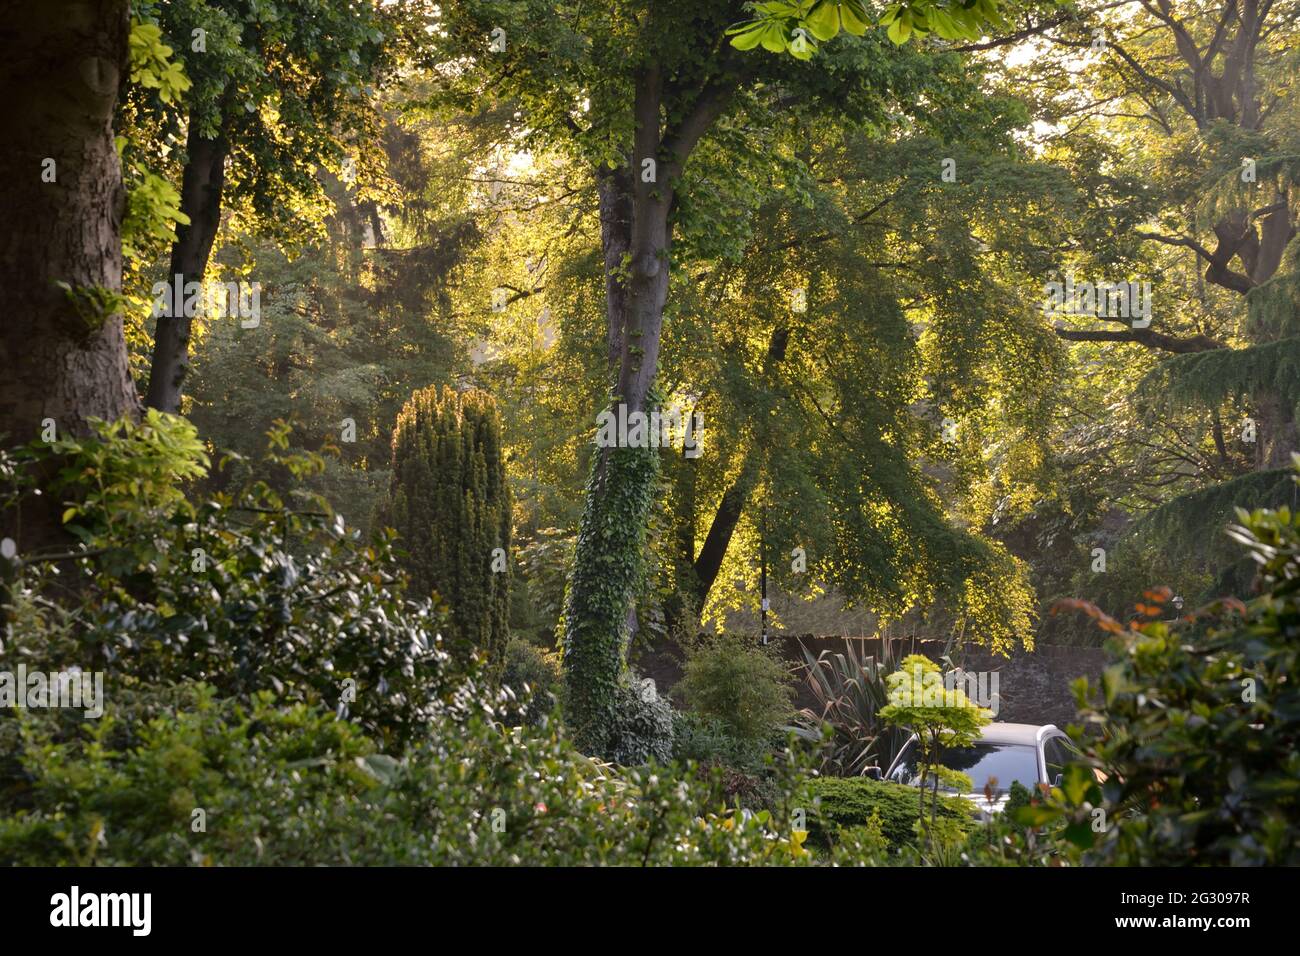 Un vert luxuriant et des jardins à Nether Edge, dans la banlieue de Sheffield, en Angleterre Banque D'Images